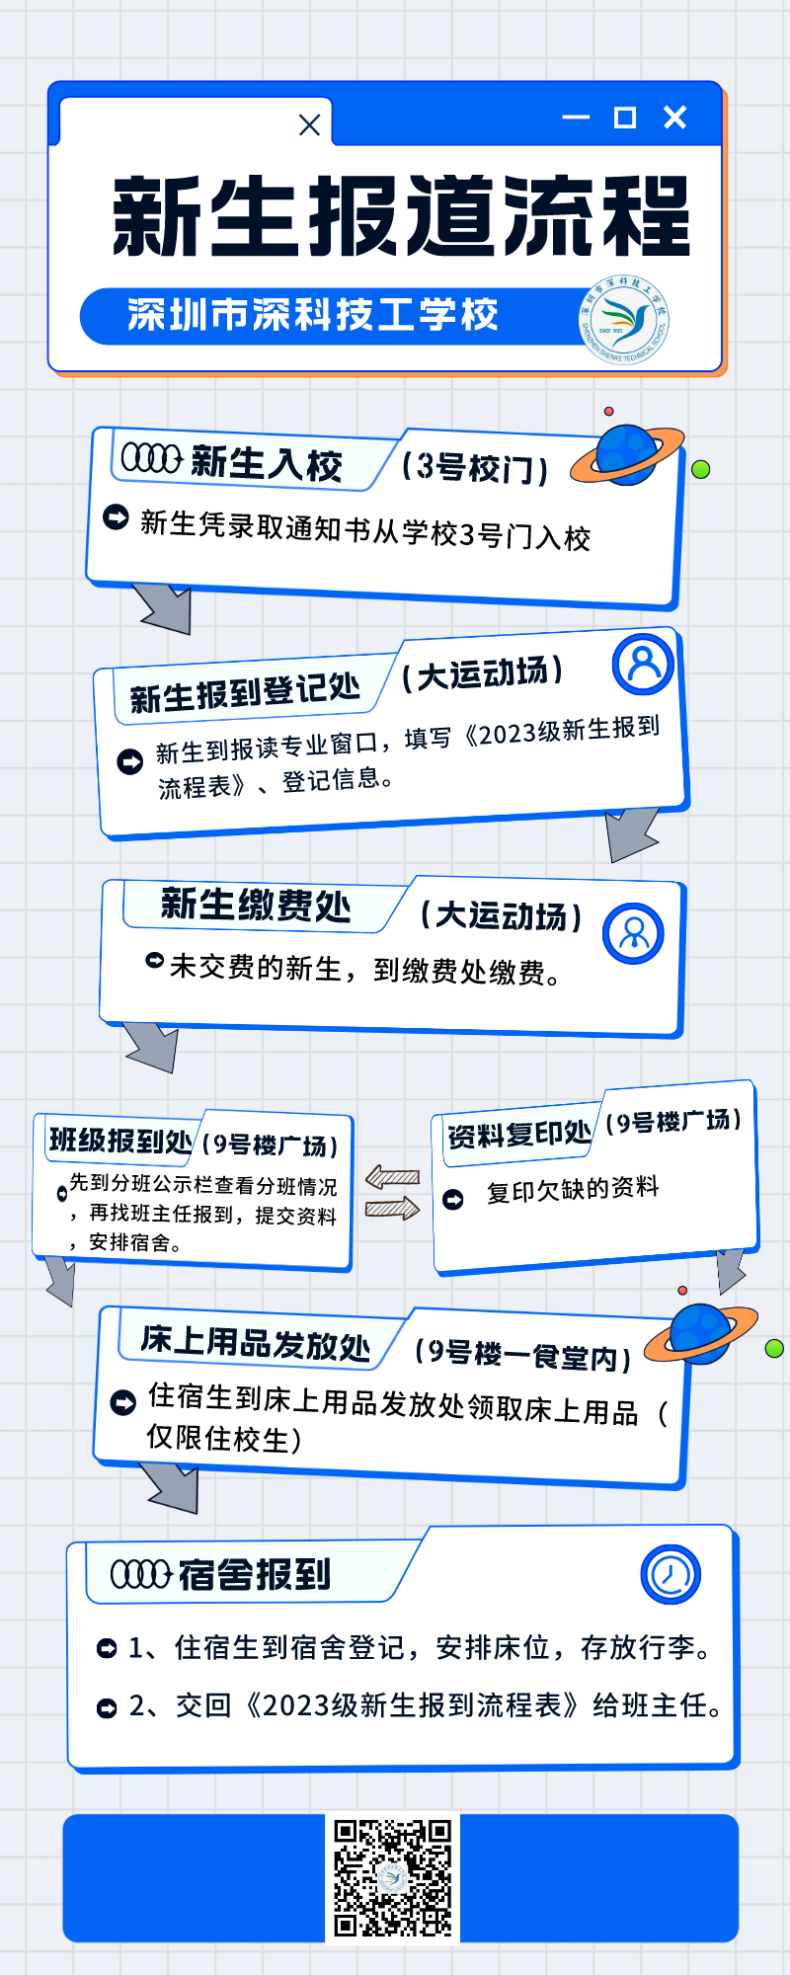 深圳市深科技工学校2023年新生入学指南手册-1